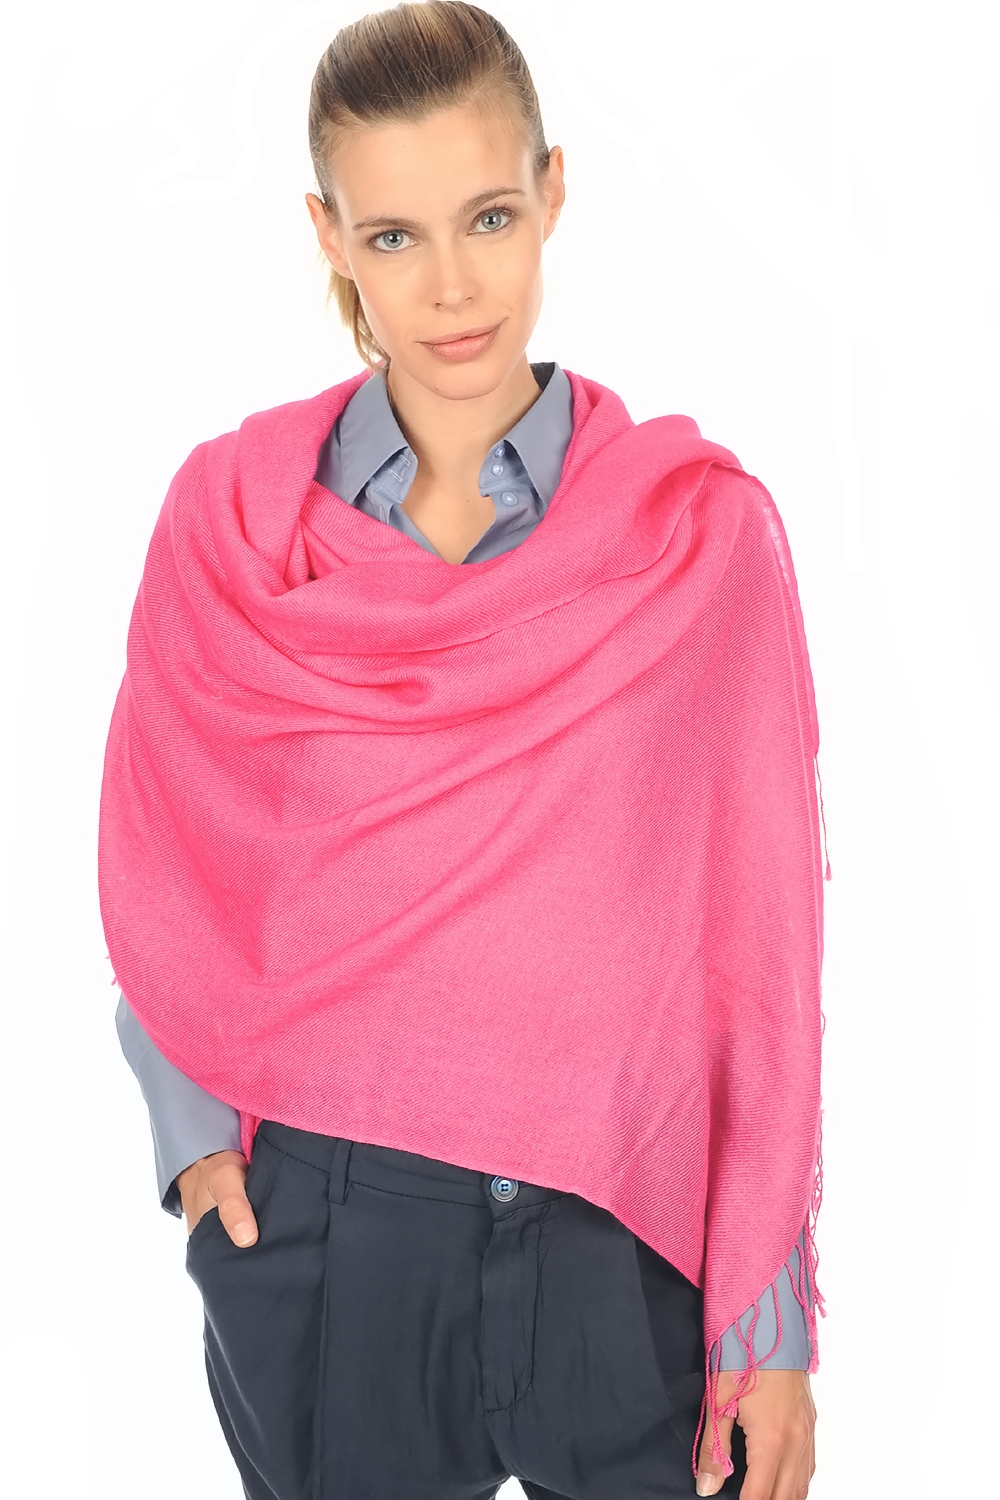 Cashmere accessories shawls diamant shocking pink 201 cm x 71 cm